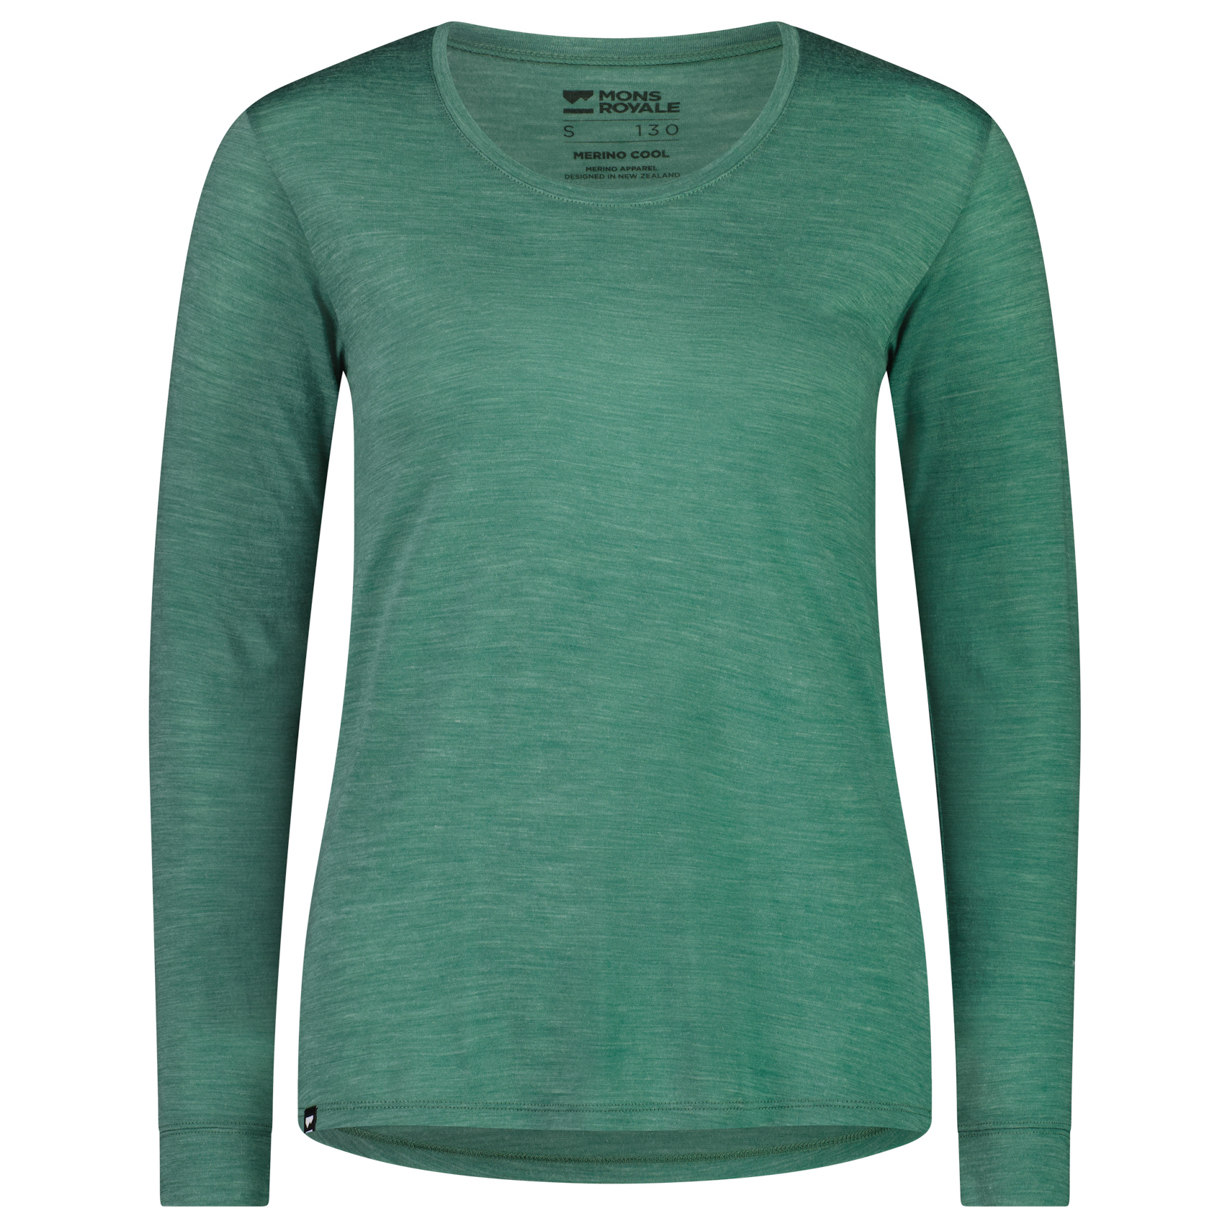 Рубашка из мериноса Mons Royale Women's Zephyr Merino Cool L/S, цвет Smokey Green